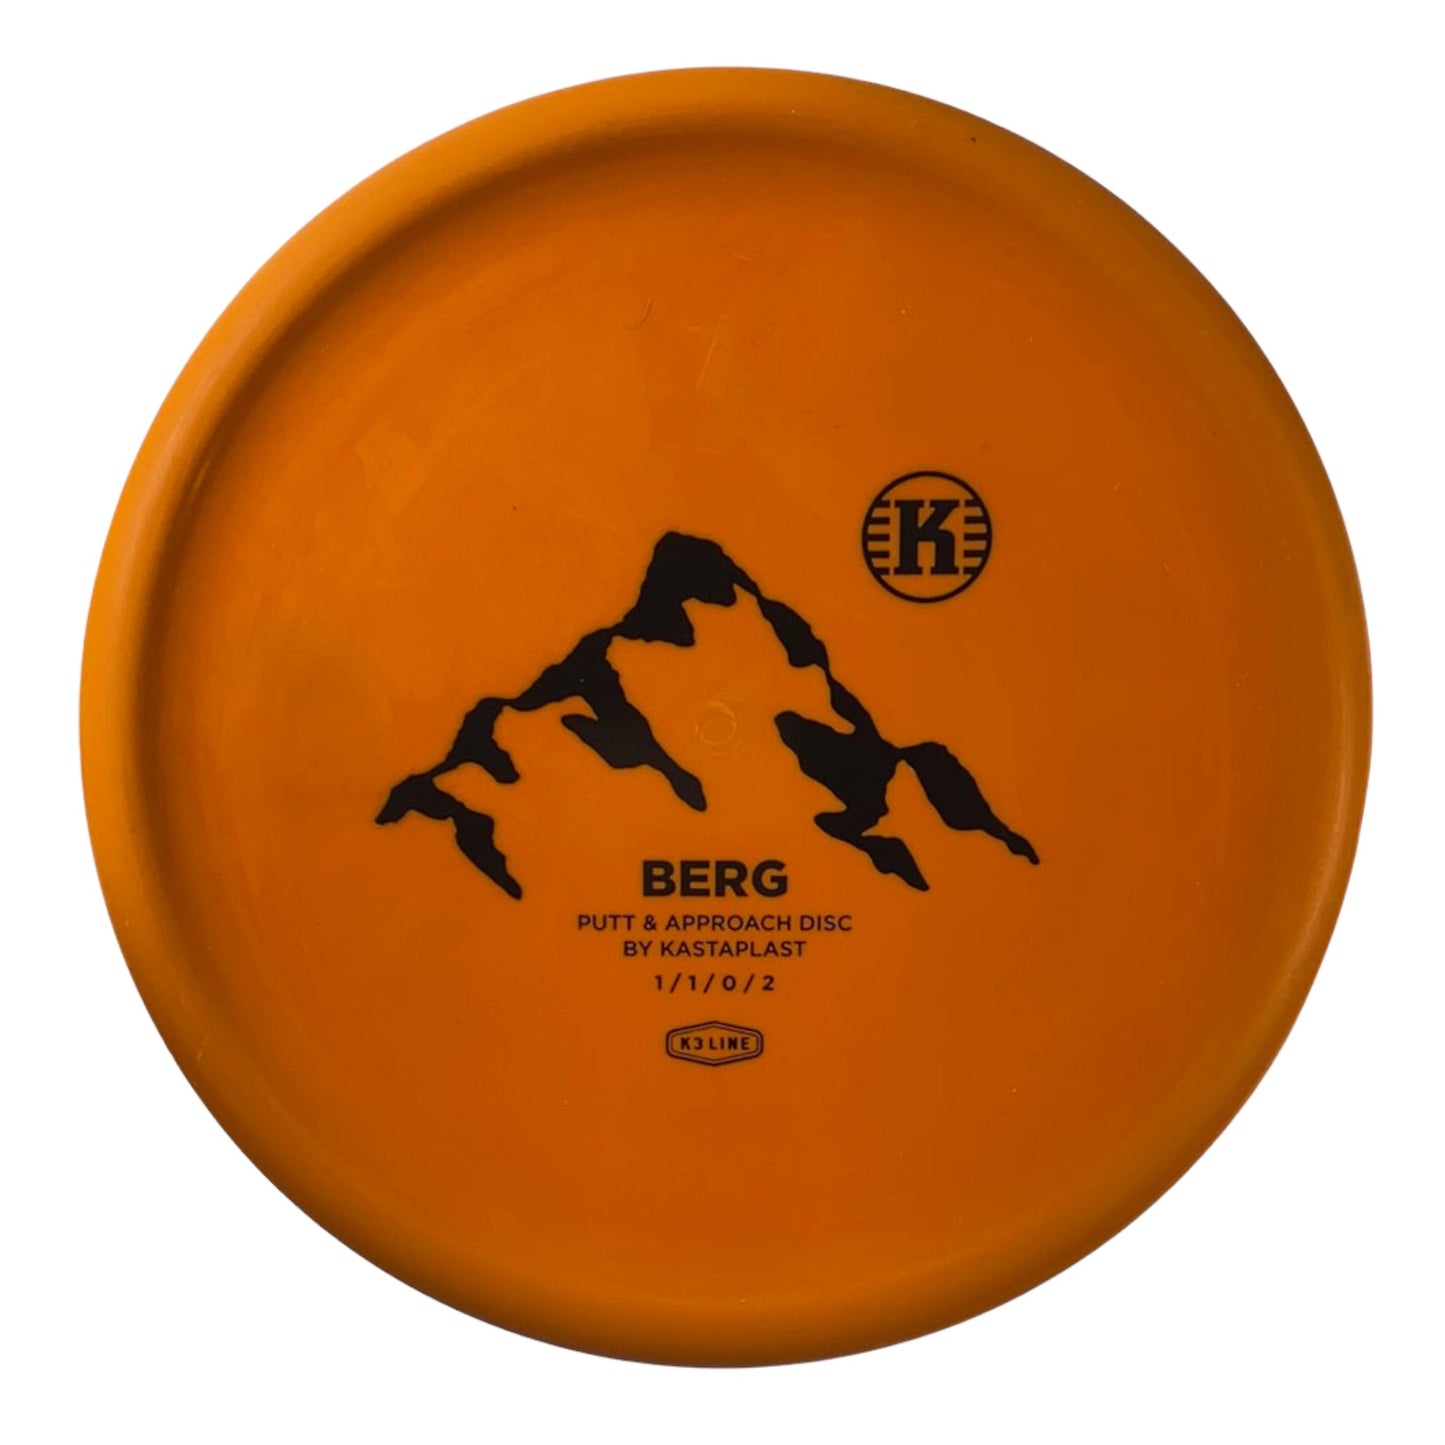 Kastaplast Berg | K3 | Orange/Black 164g Disc Golf